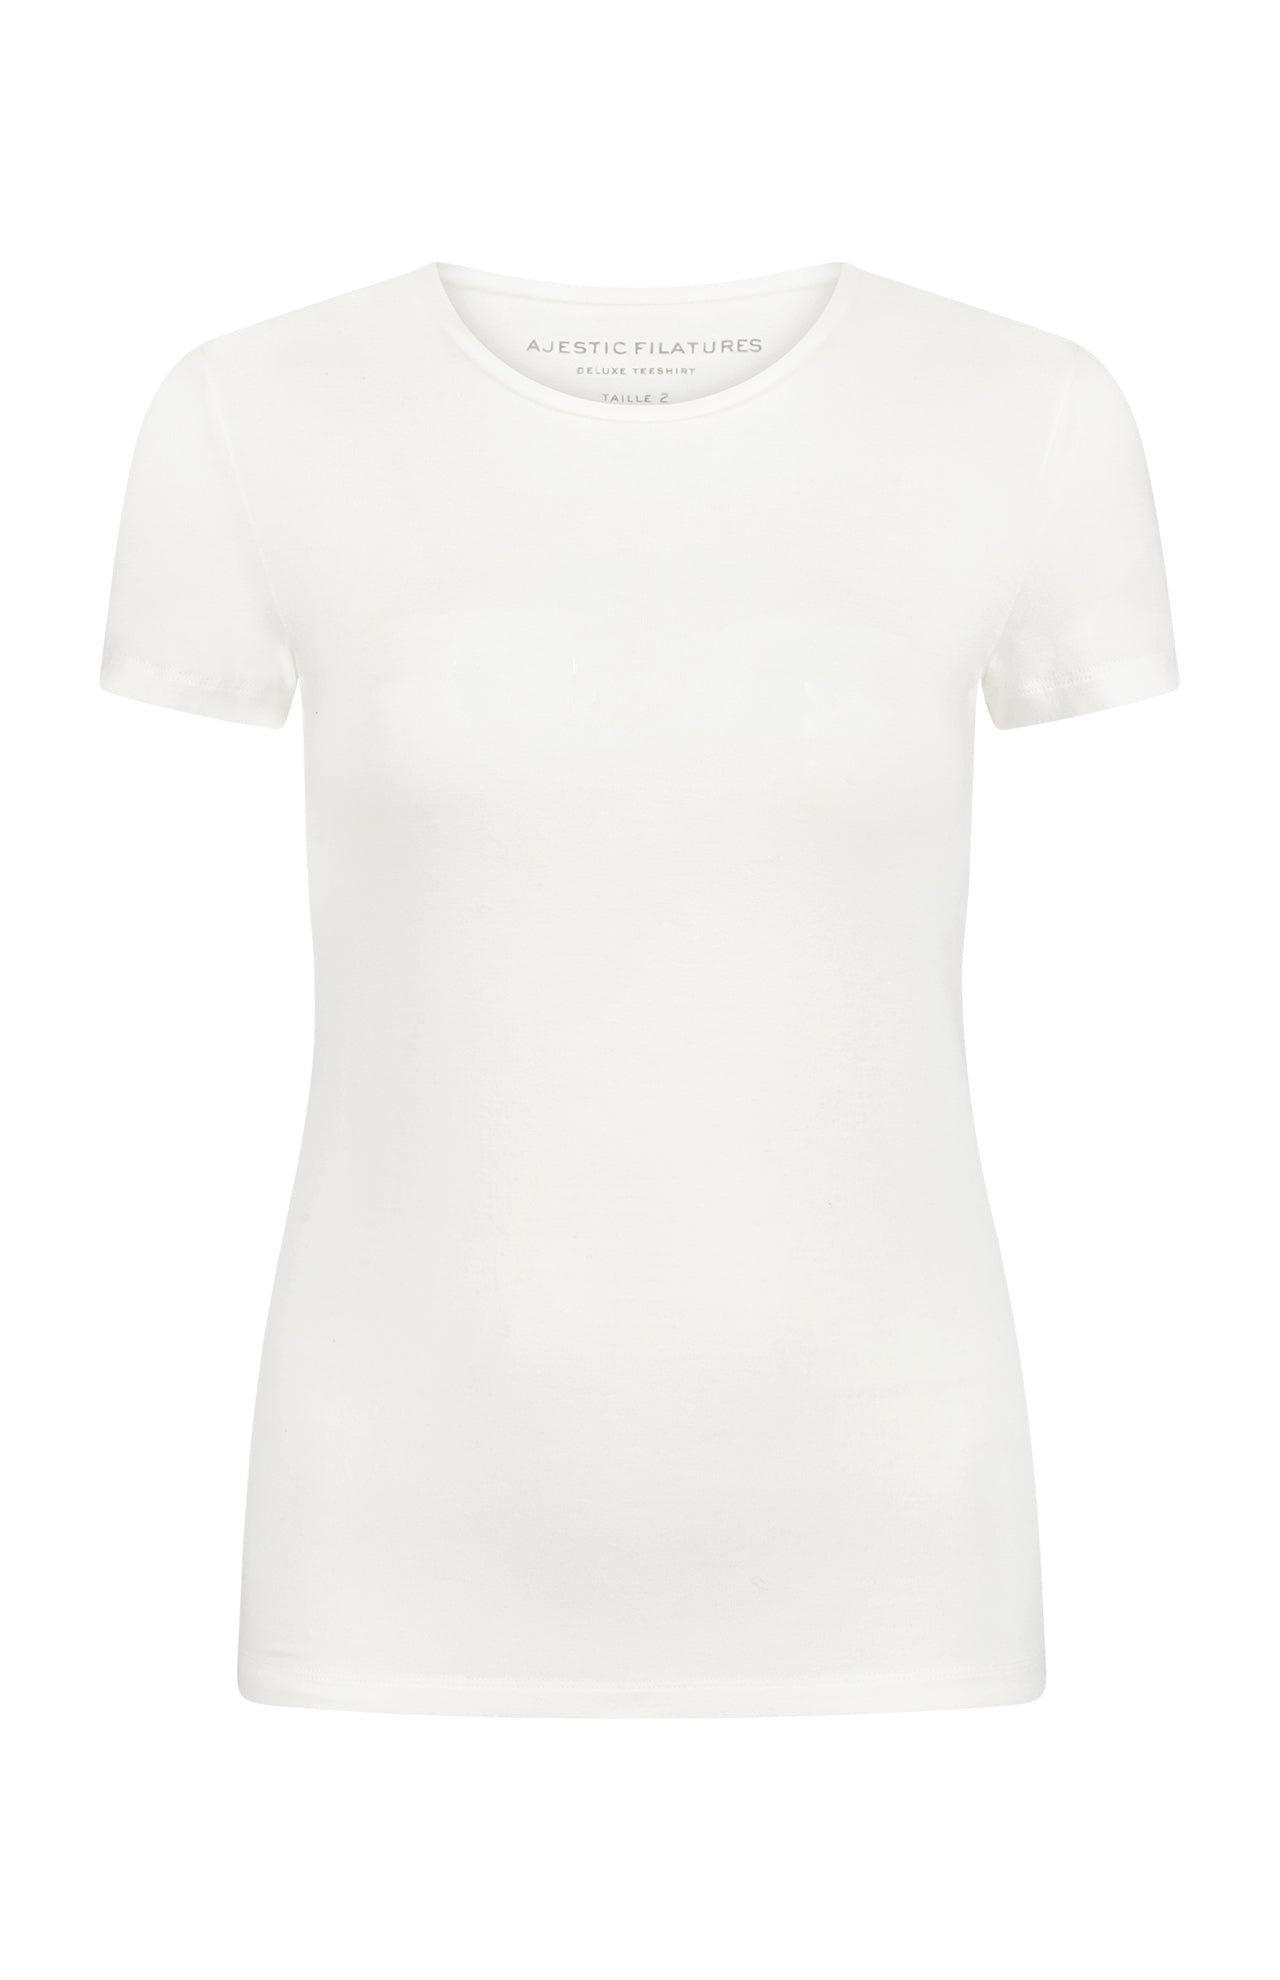 Soft Touch Short Sleeve Crewneck T-Shirt (7200335888499)